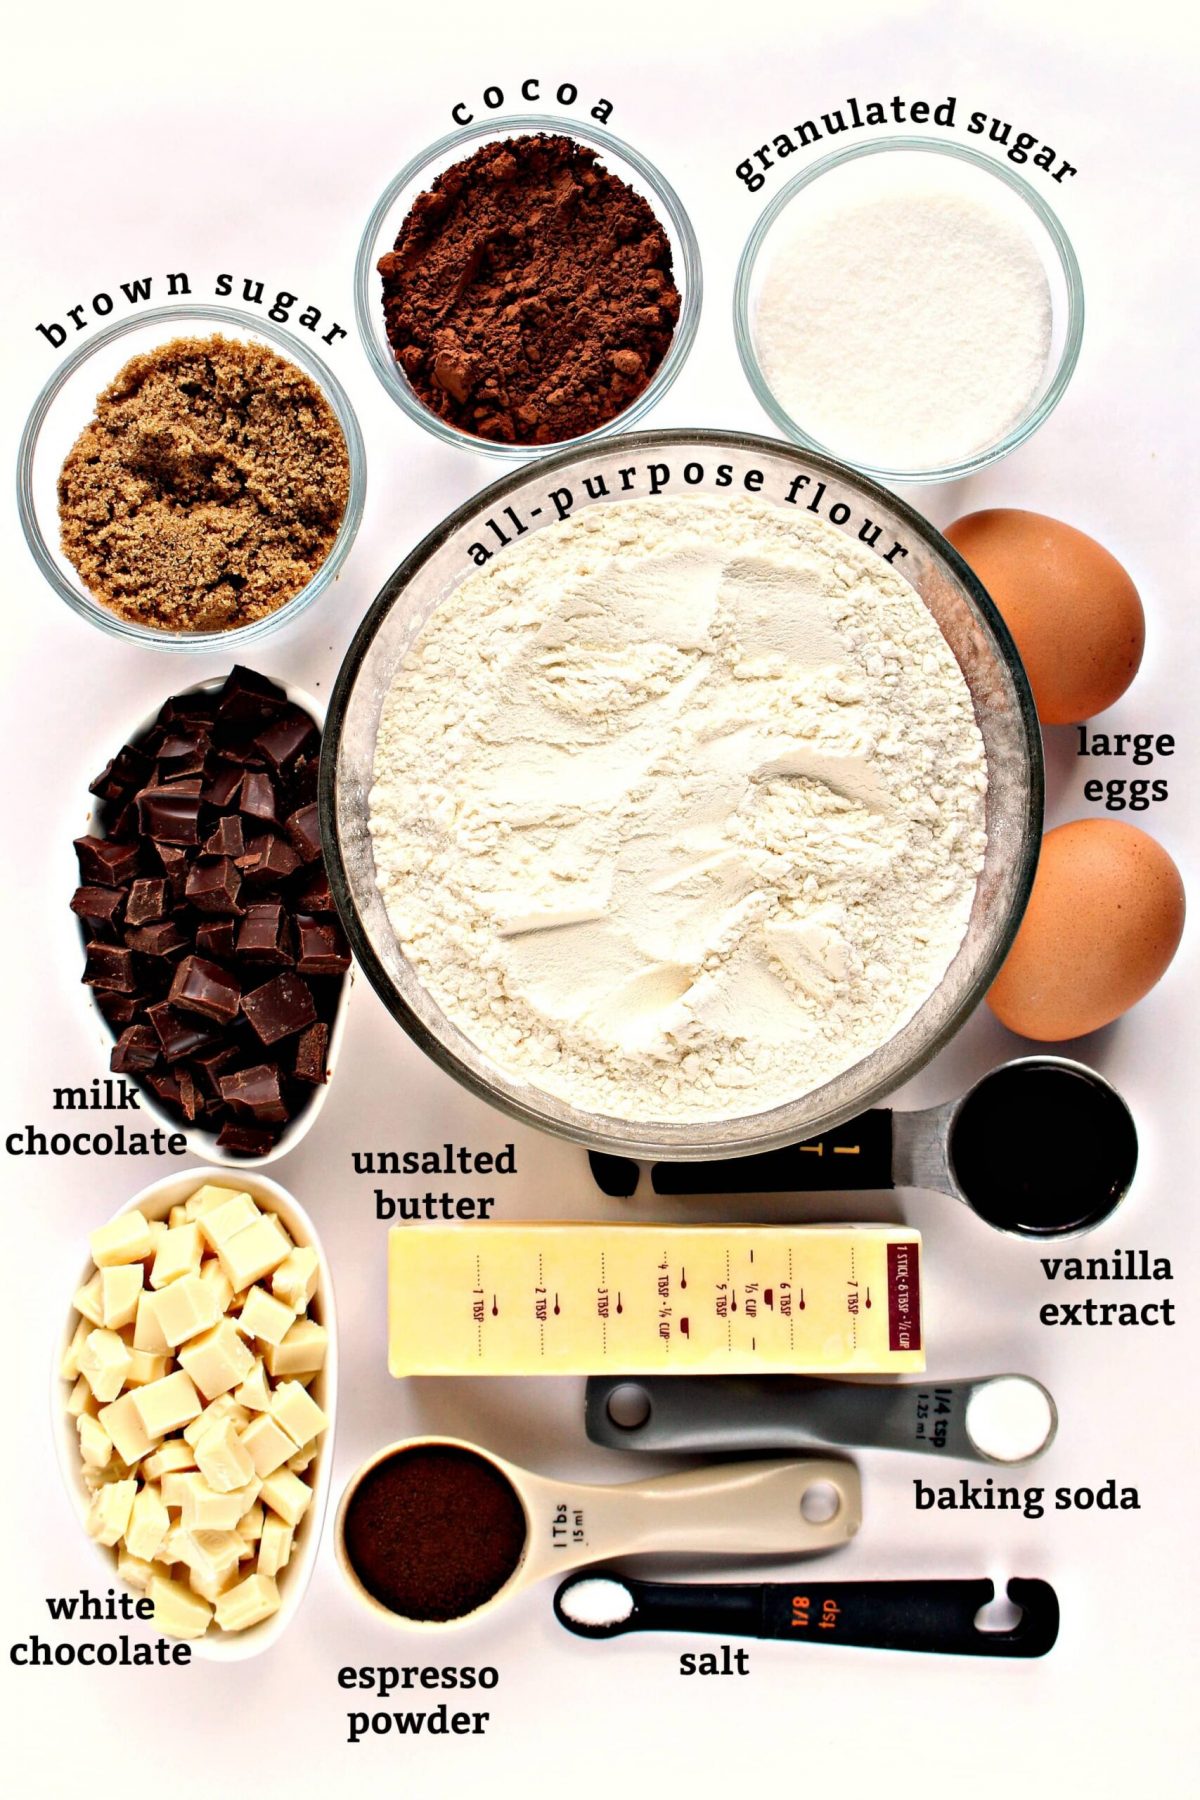 Ingredients with text labels: flour, sugar, white/milk chocolate, eggs, butter, vanilla, salt, espresso powder.